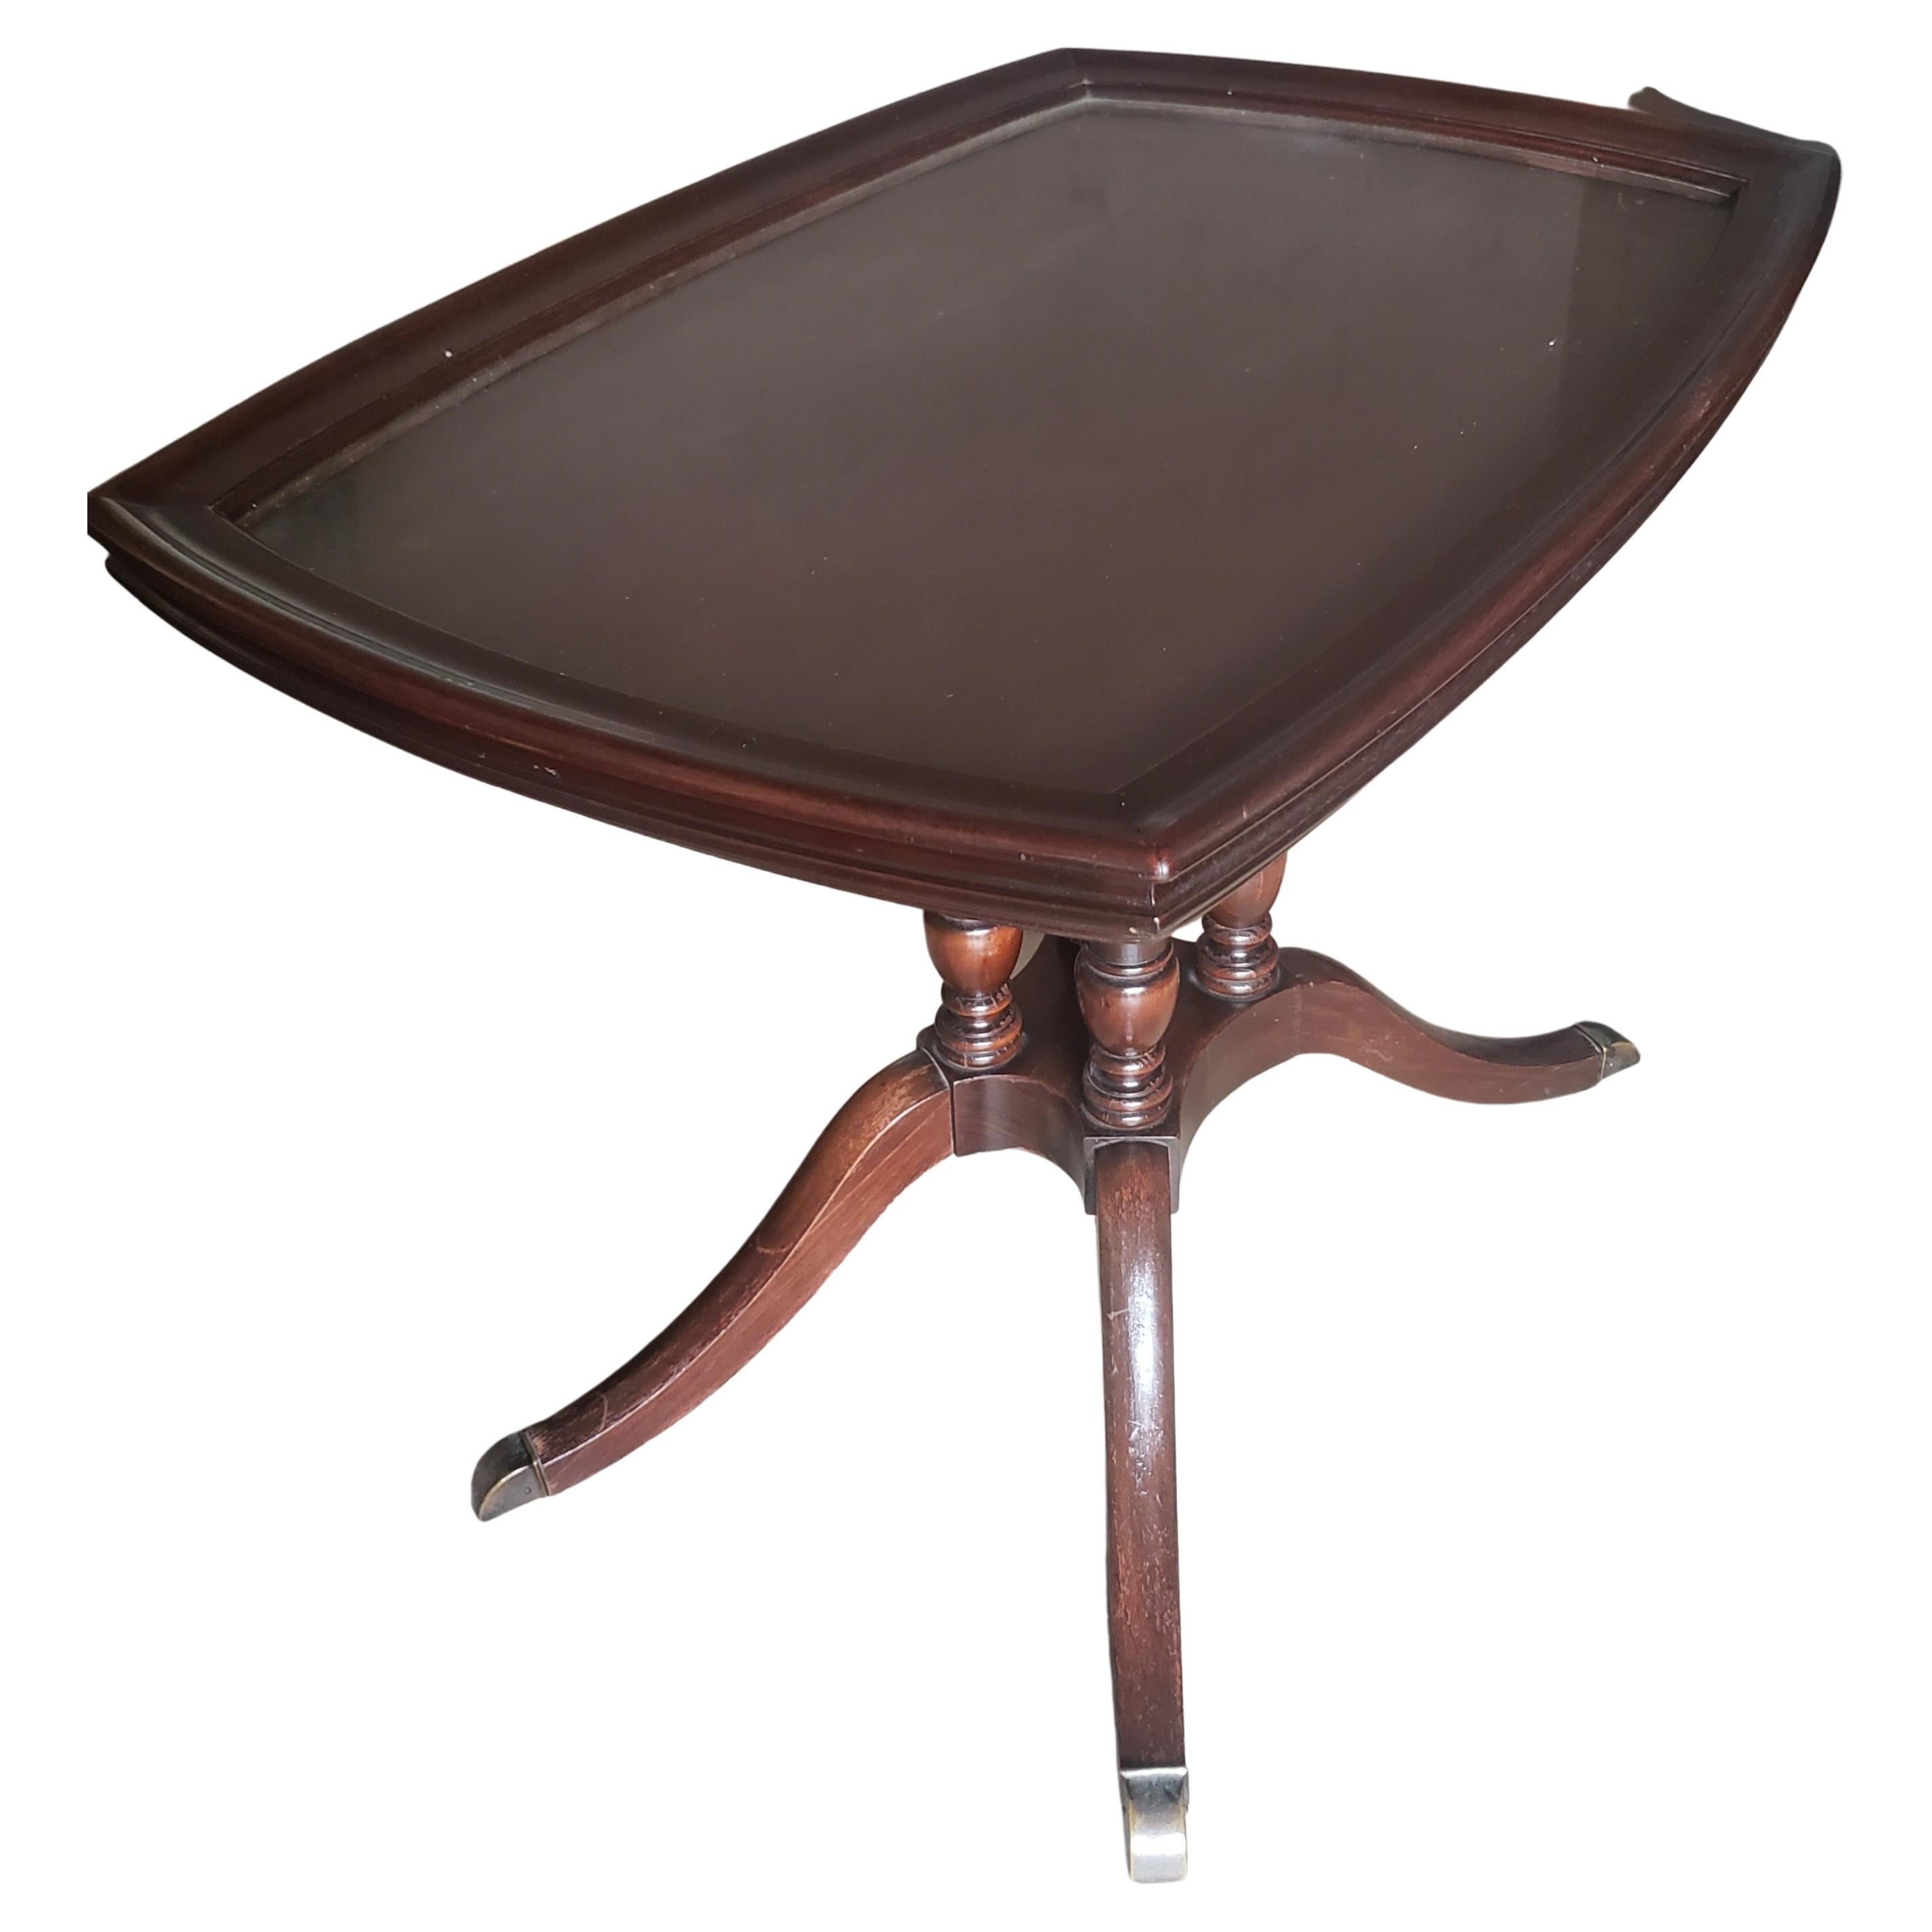 Table d'appoint en acajou avec plateau en verre de Brandt Furniture des années 1940. Il est doté d'un piédestal quadripode se terminant par 4 pieds en laiton.
